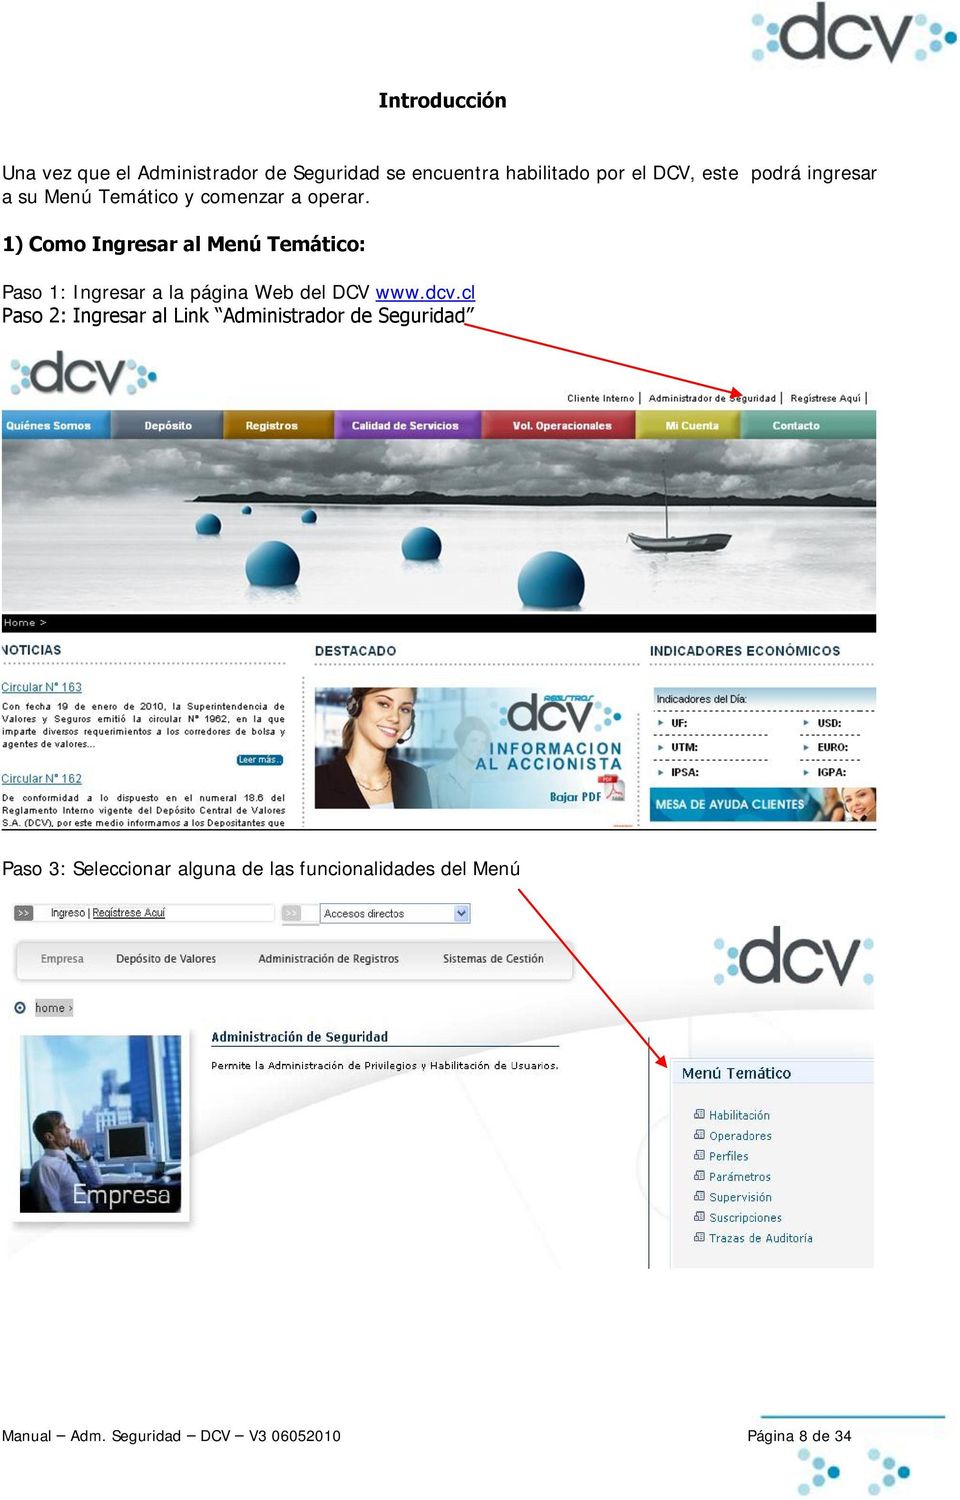 1) Como Ingresar al Menú Temático: Paso 1: Ingresar a la página Web del DCV www.dcv.